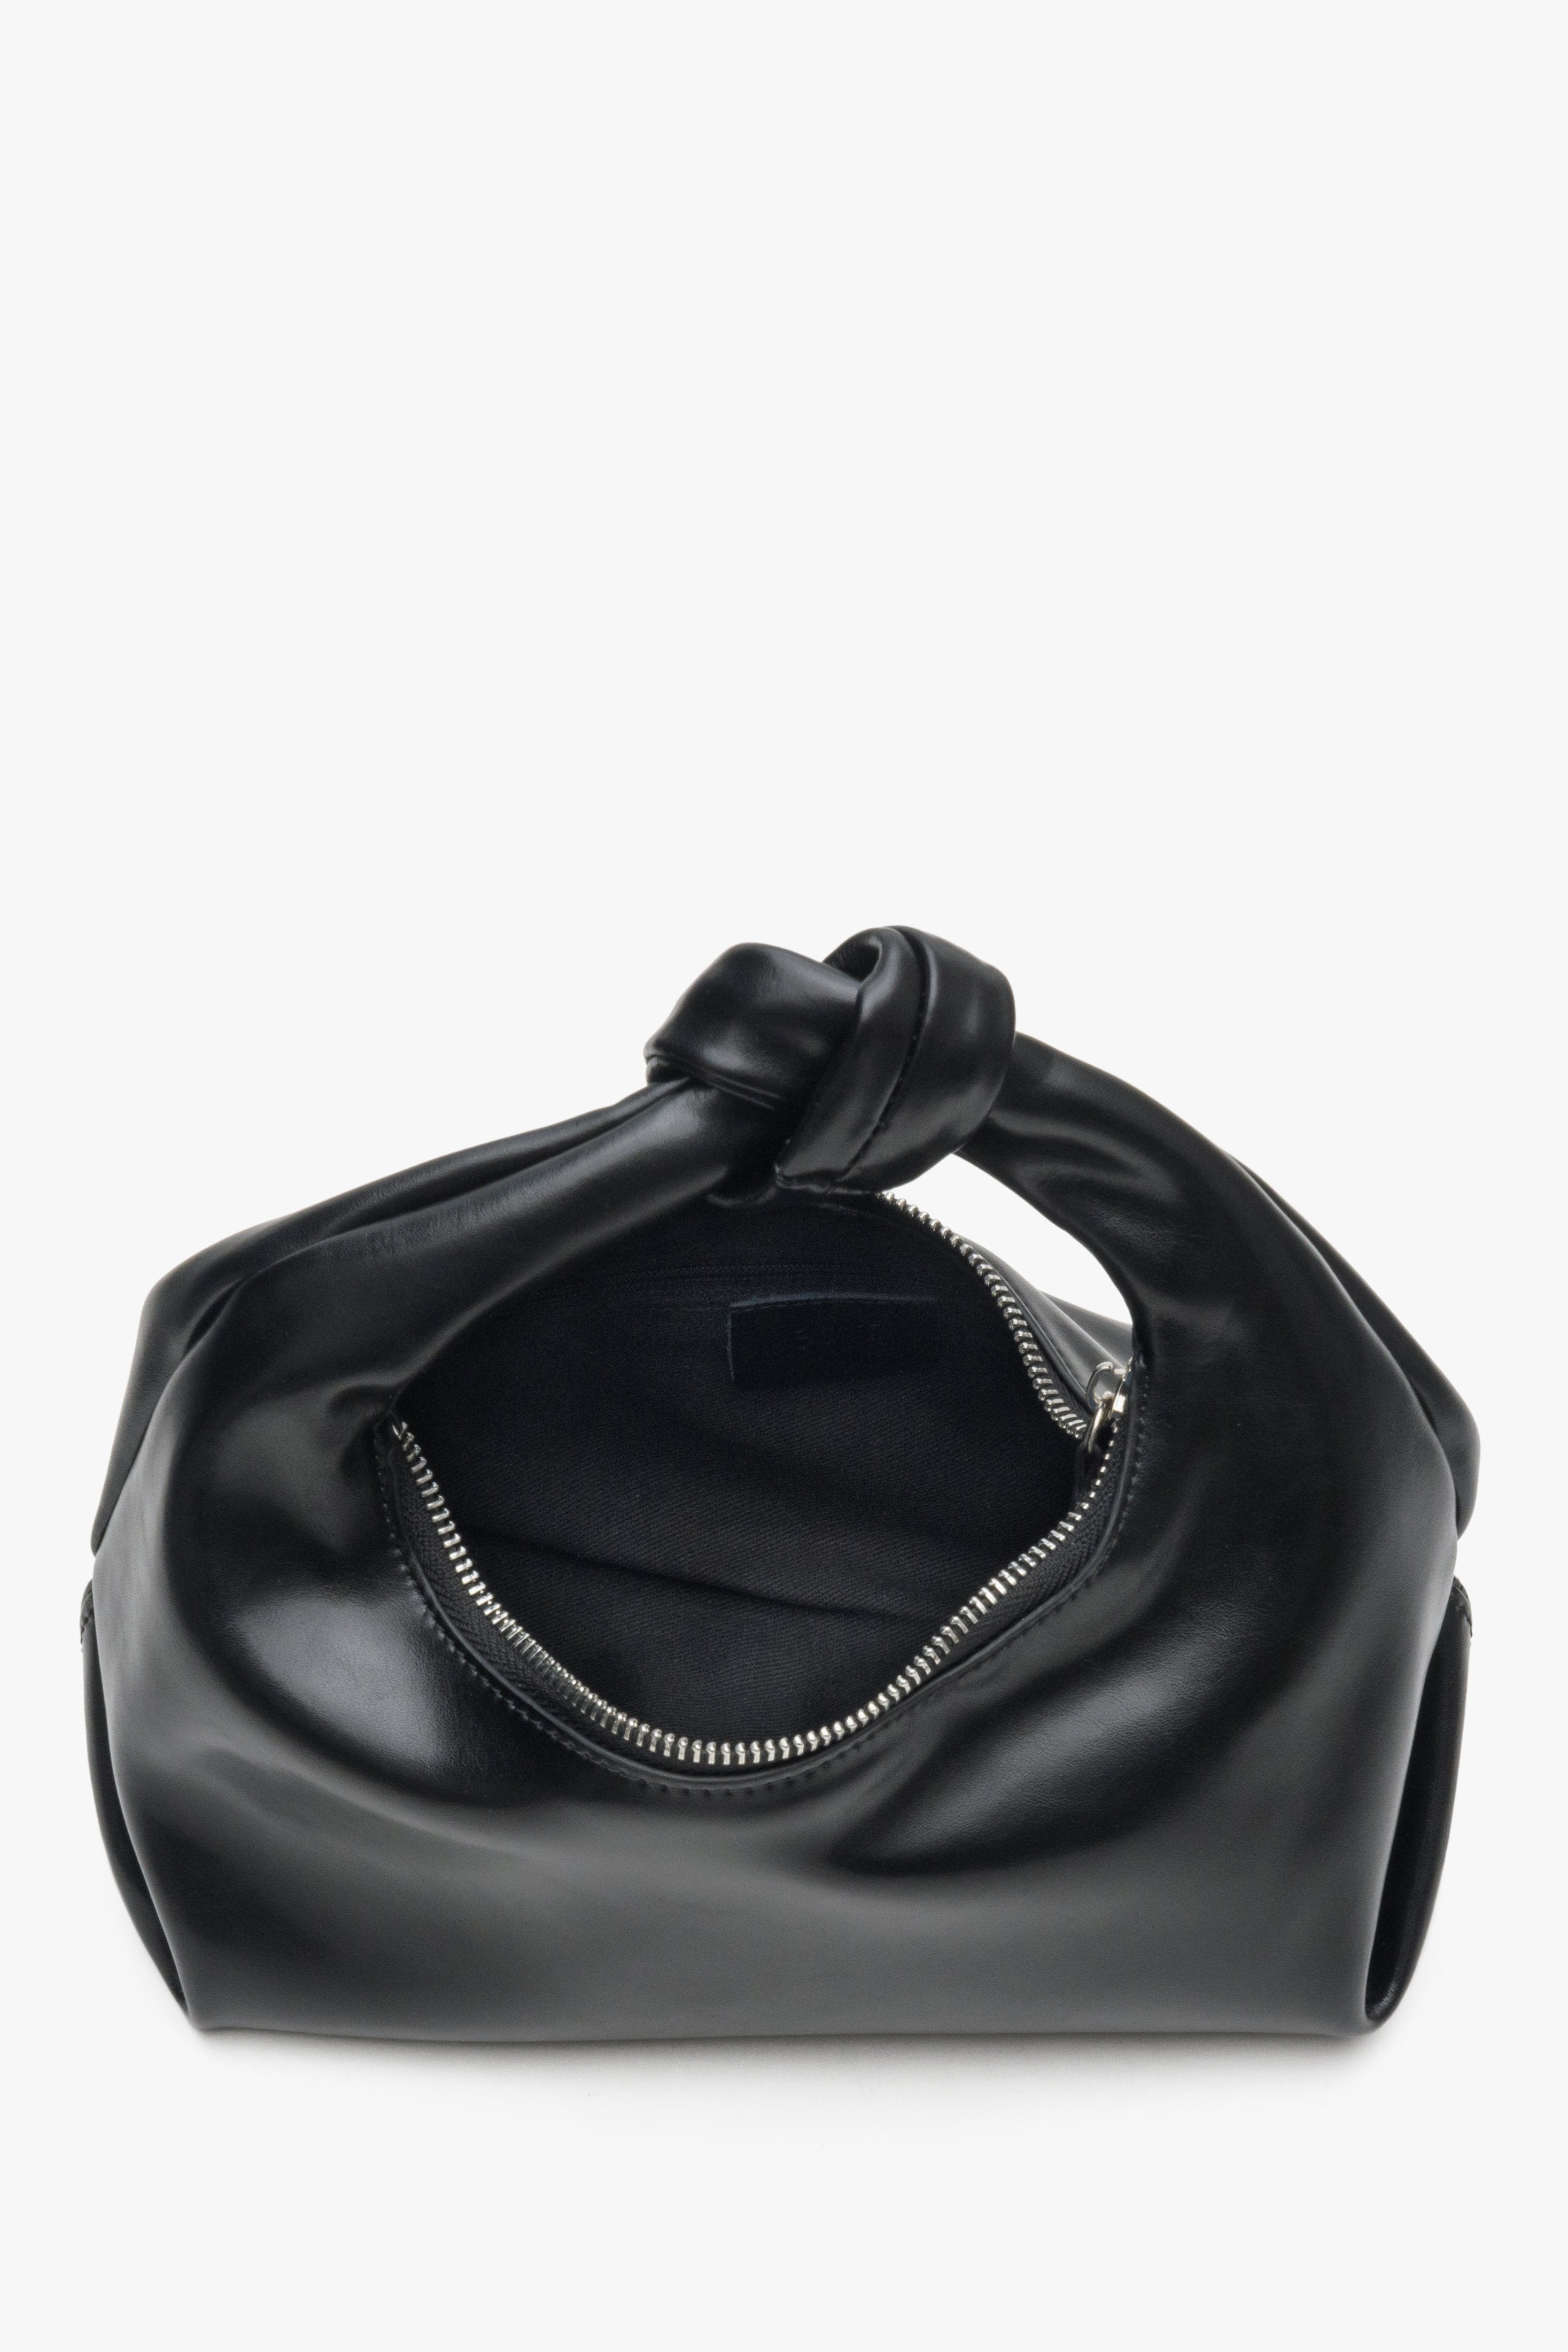 Mała wieczorowa torebka damska w kolorze czarnym Estro - zbliżenie na wnętrze modelu.